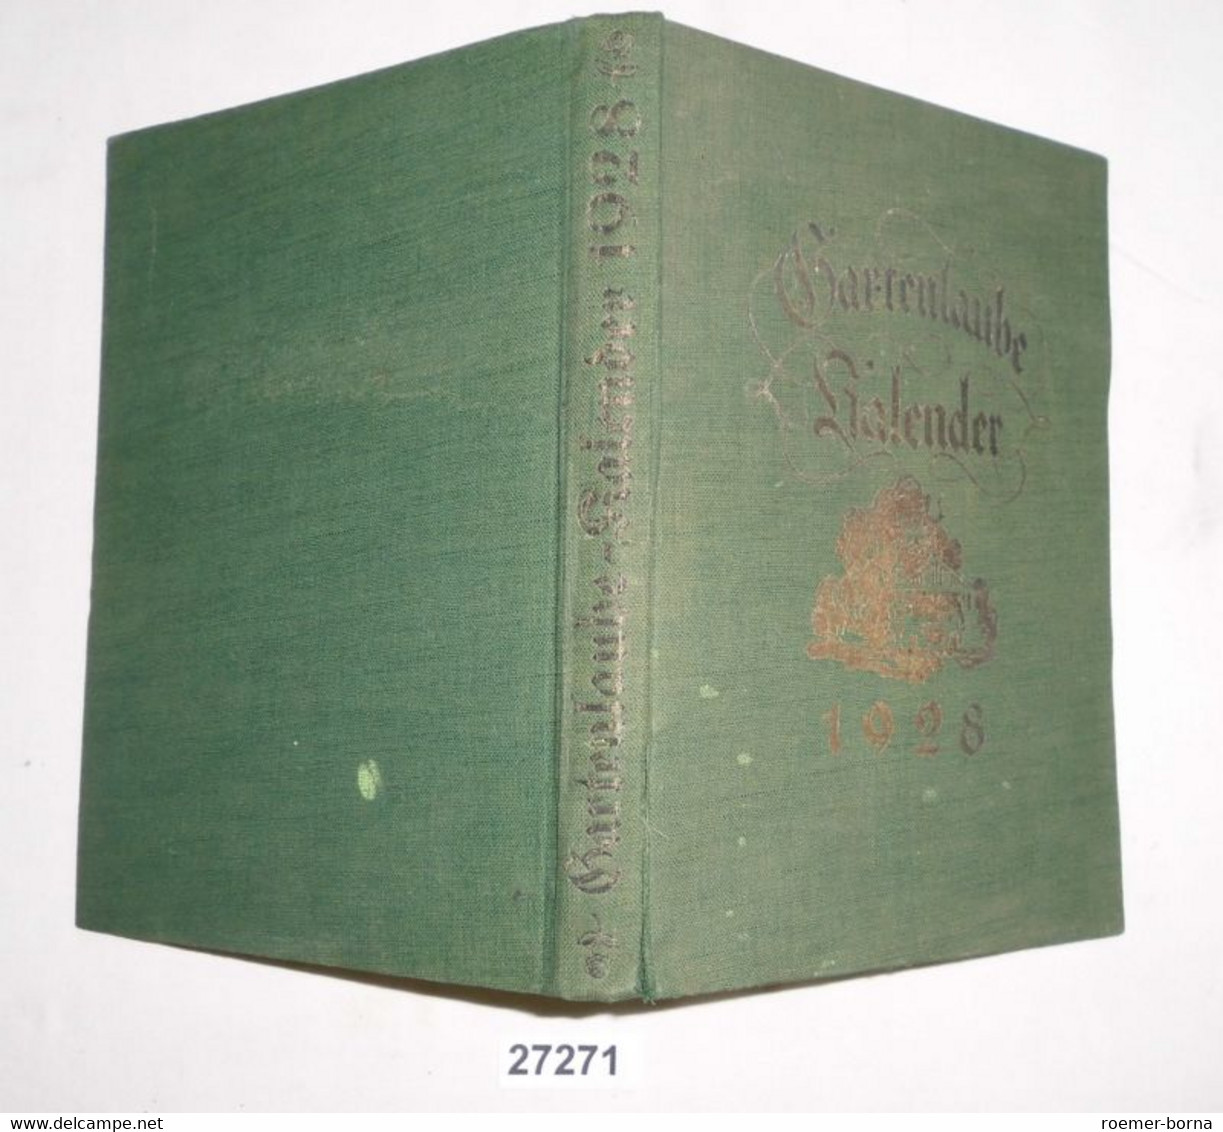 Gartenlaube-Kalender 1928 - Calendarios